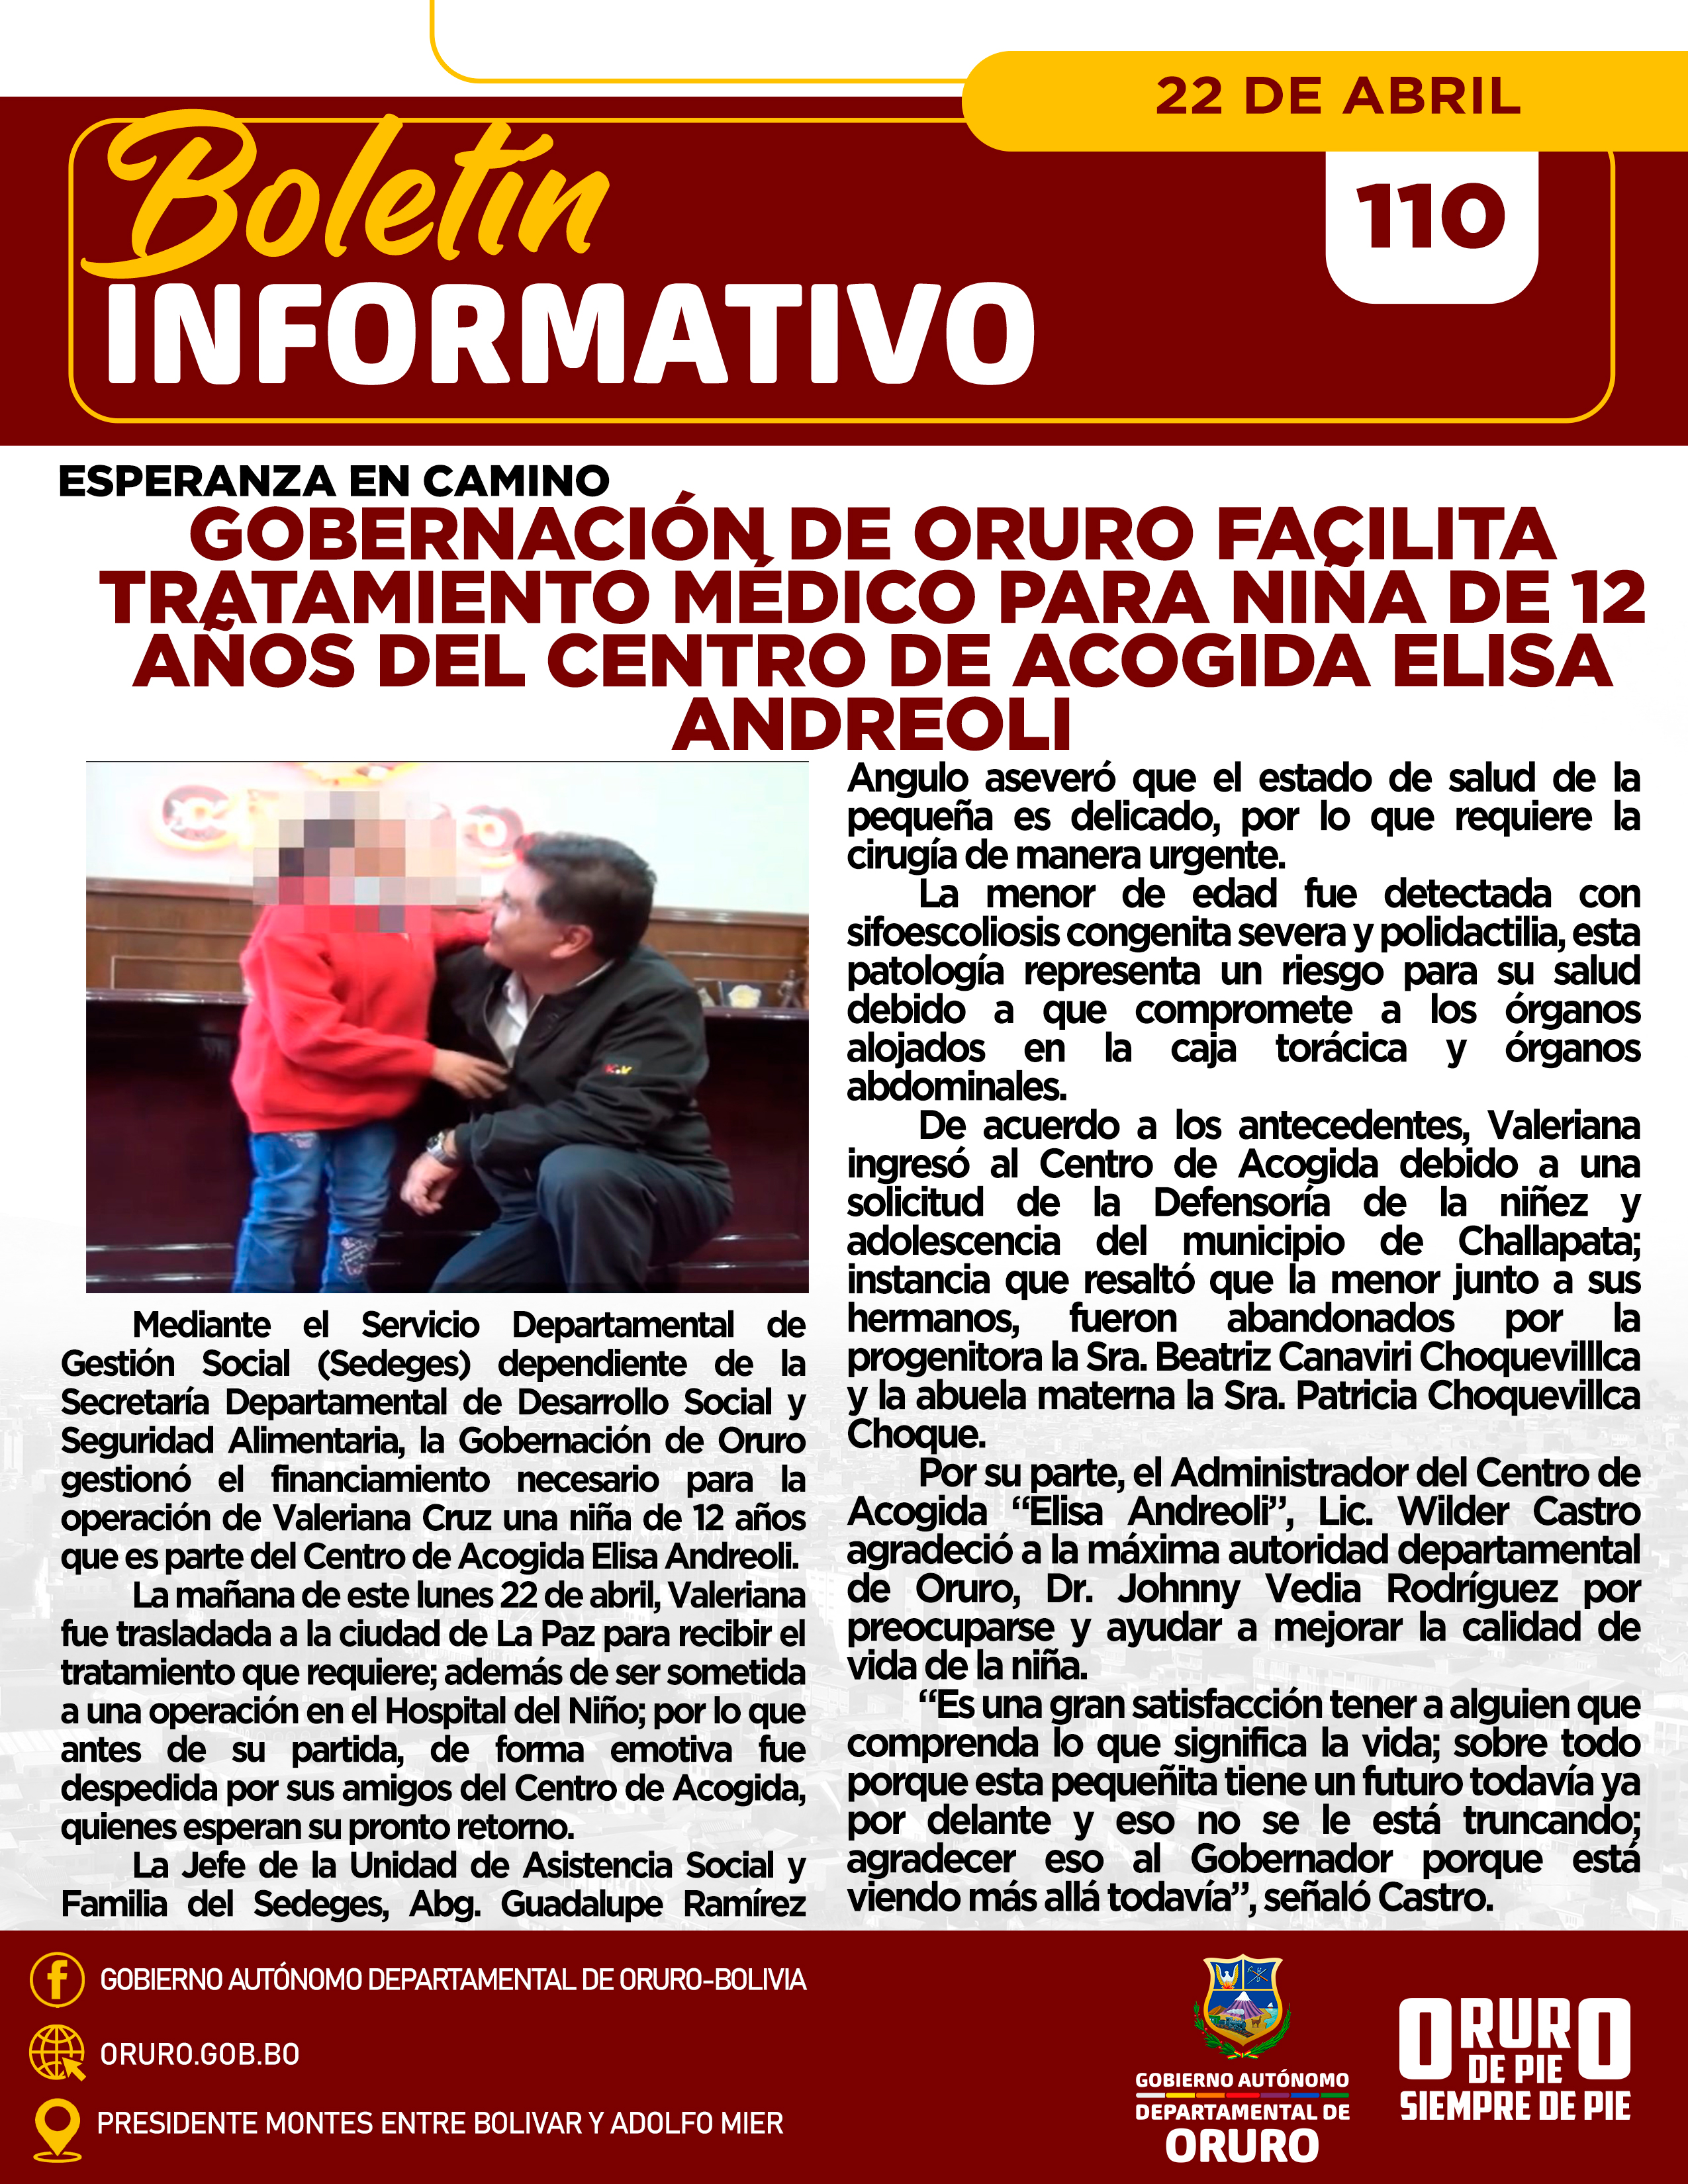 Esperanza en camino, Gobernación de Oruro facilita tratamiento médico para niña de 12 años del Centro de Acogida Elisa Andreoli